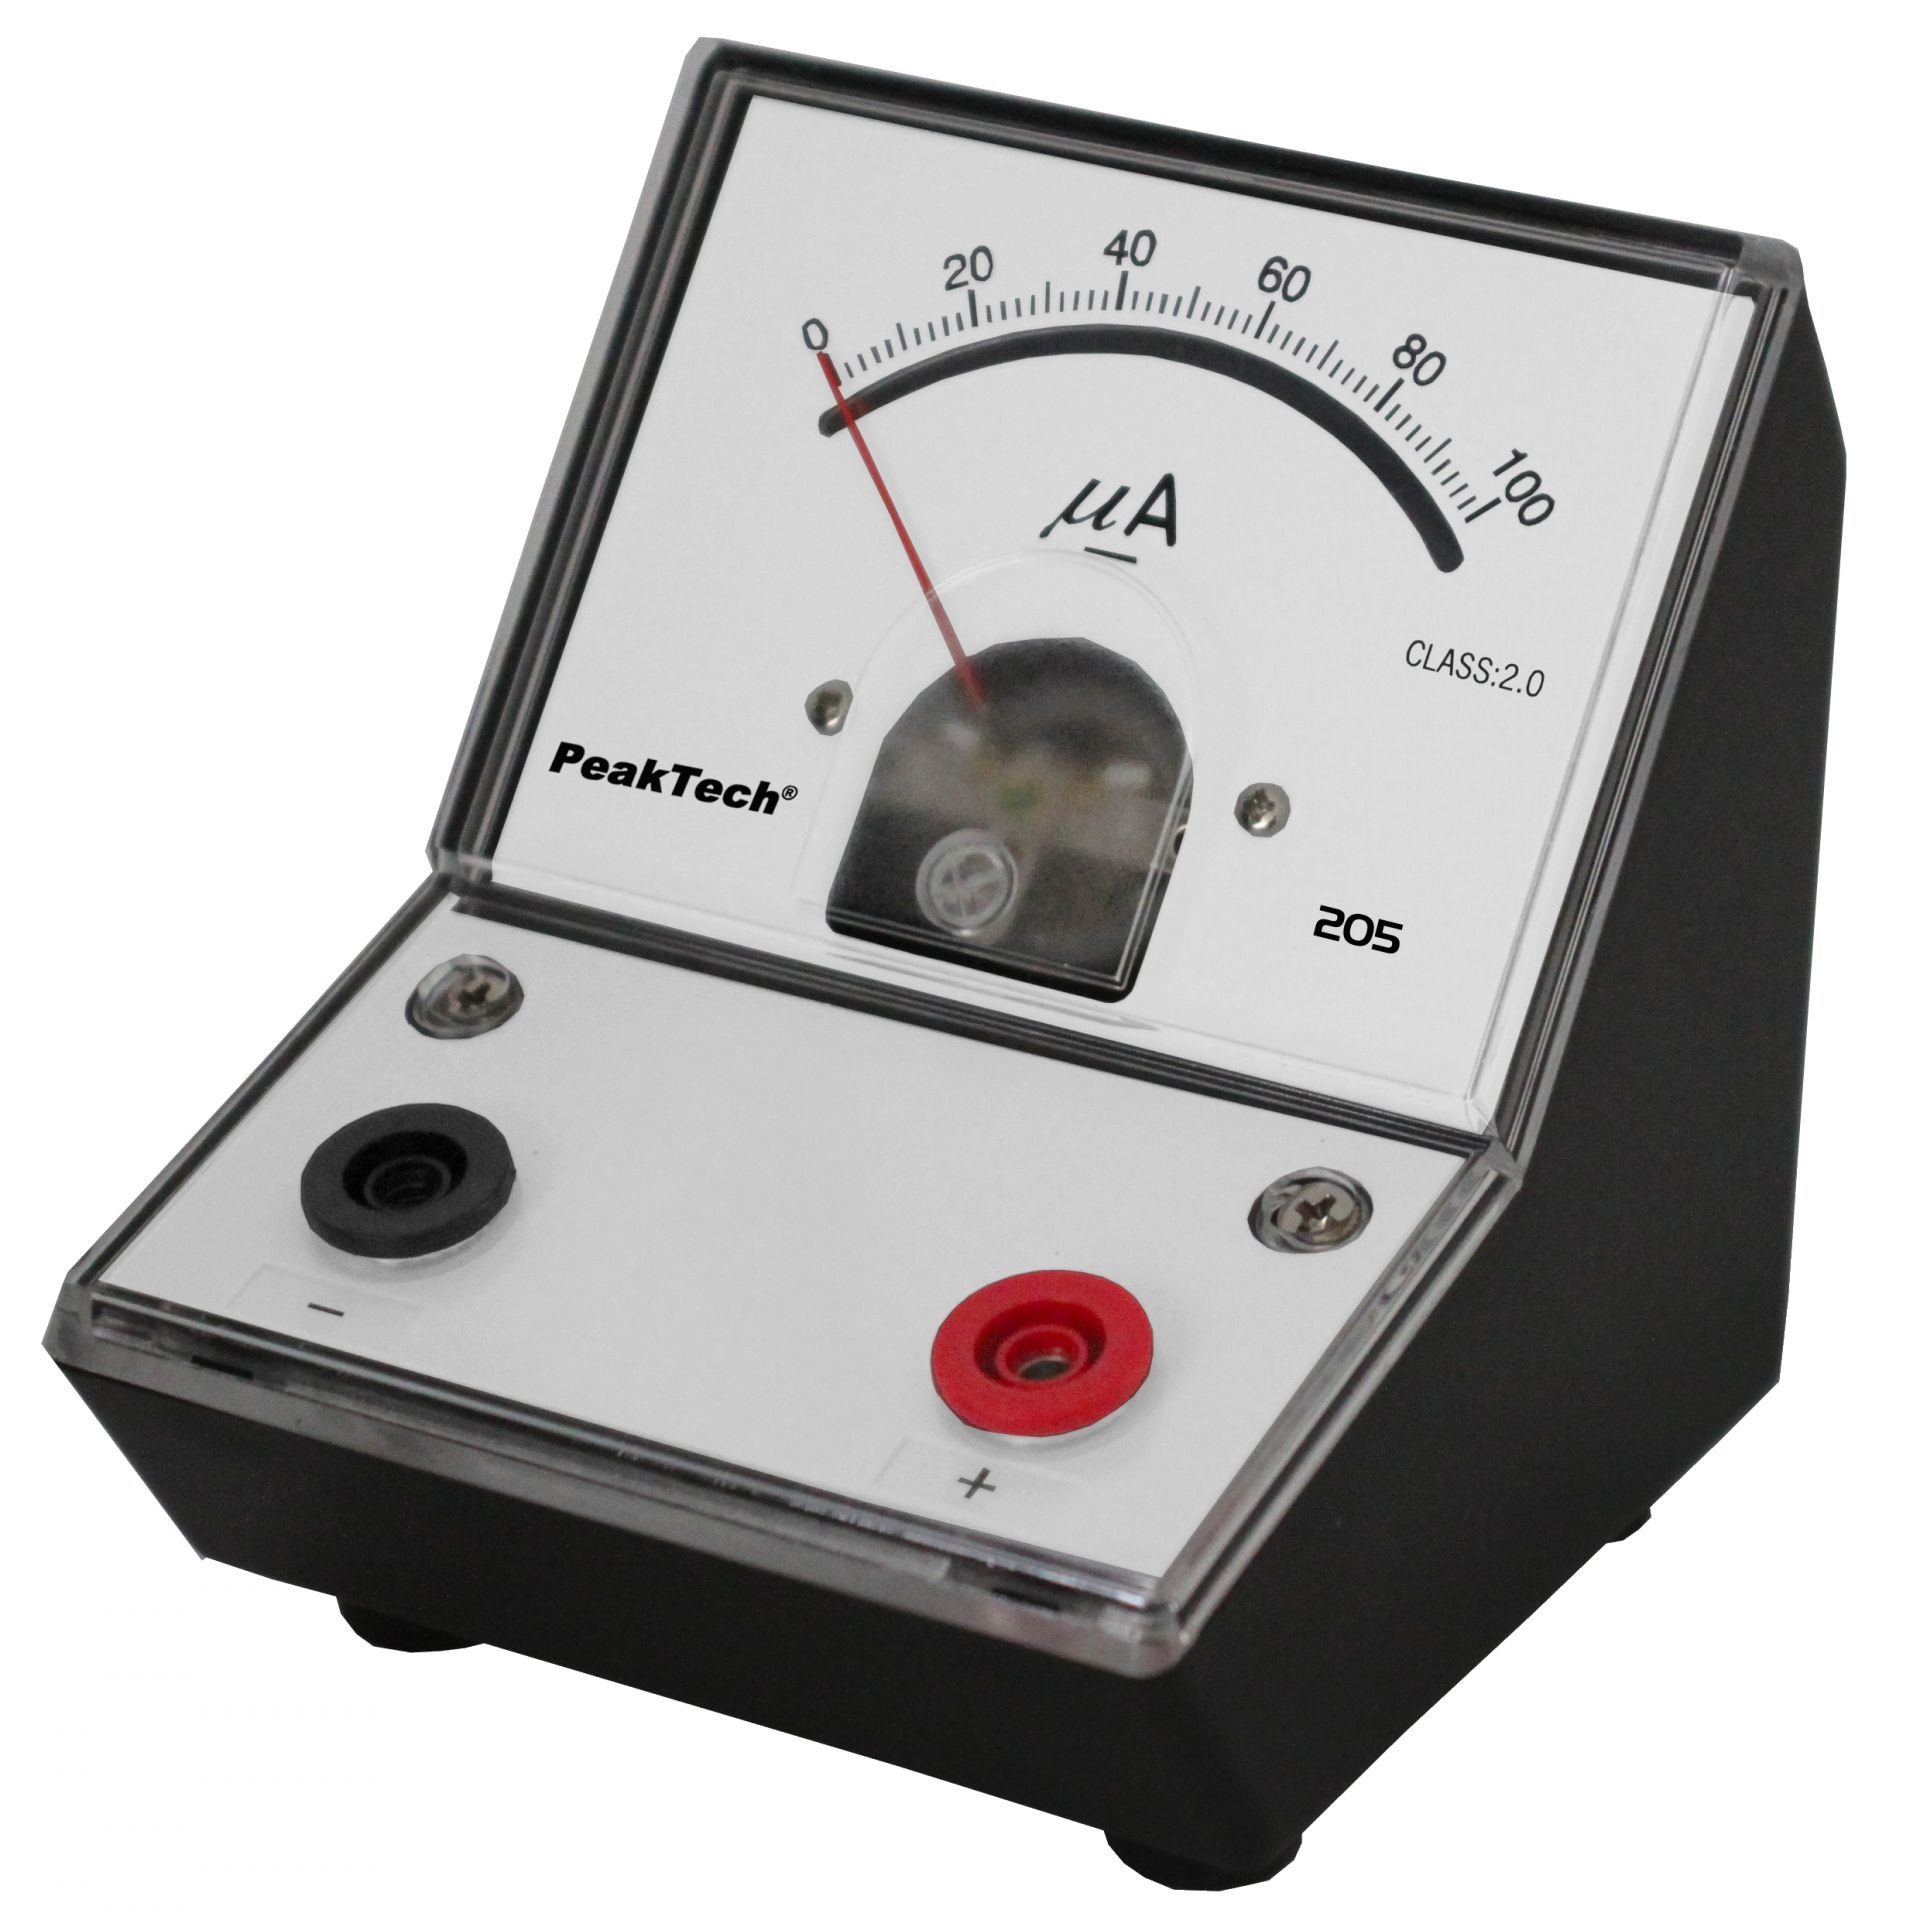 0 1-tlg. (ED-205 Strommessgerät - PeakTech µA 0-100), PeakTech 205-02: 100 Analog-Amperemeter P